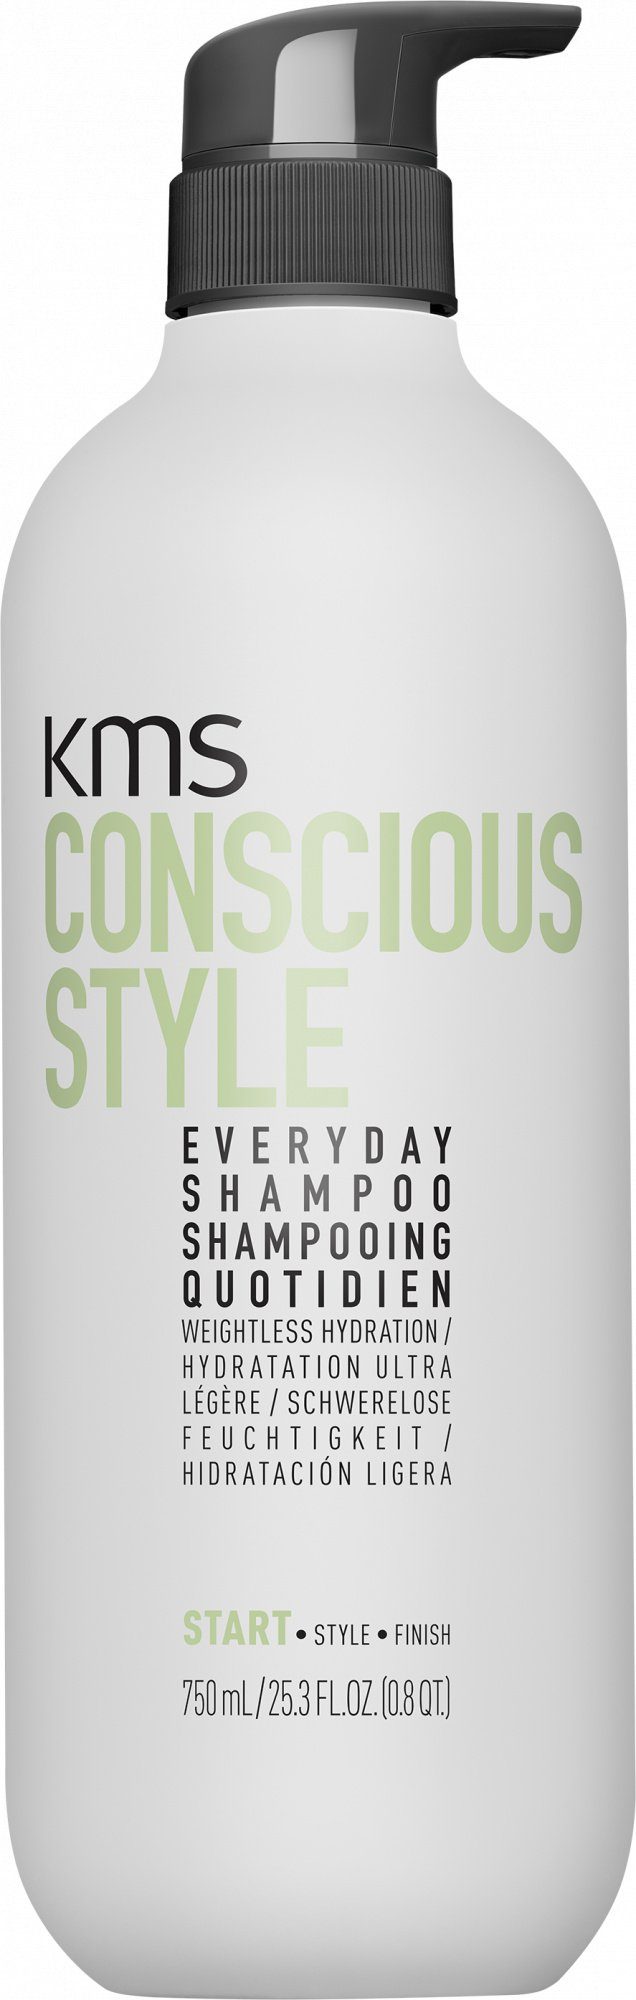 die für Conscious Shampoo, Haarshampoo Reinigung Style KMS tägliche Everyday